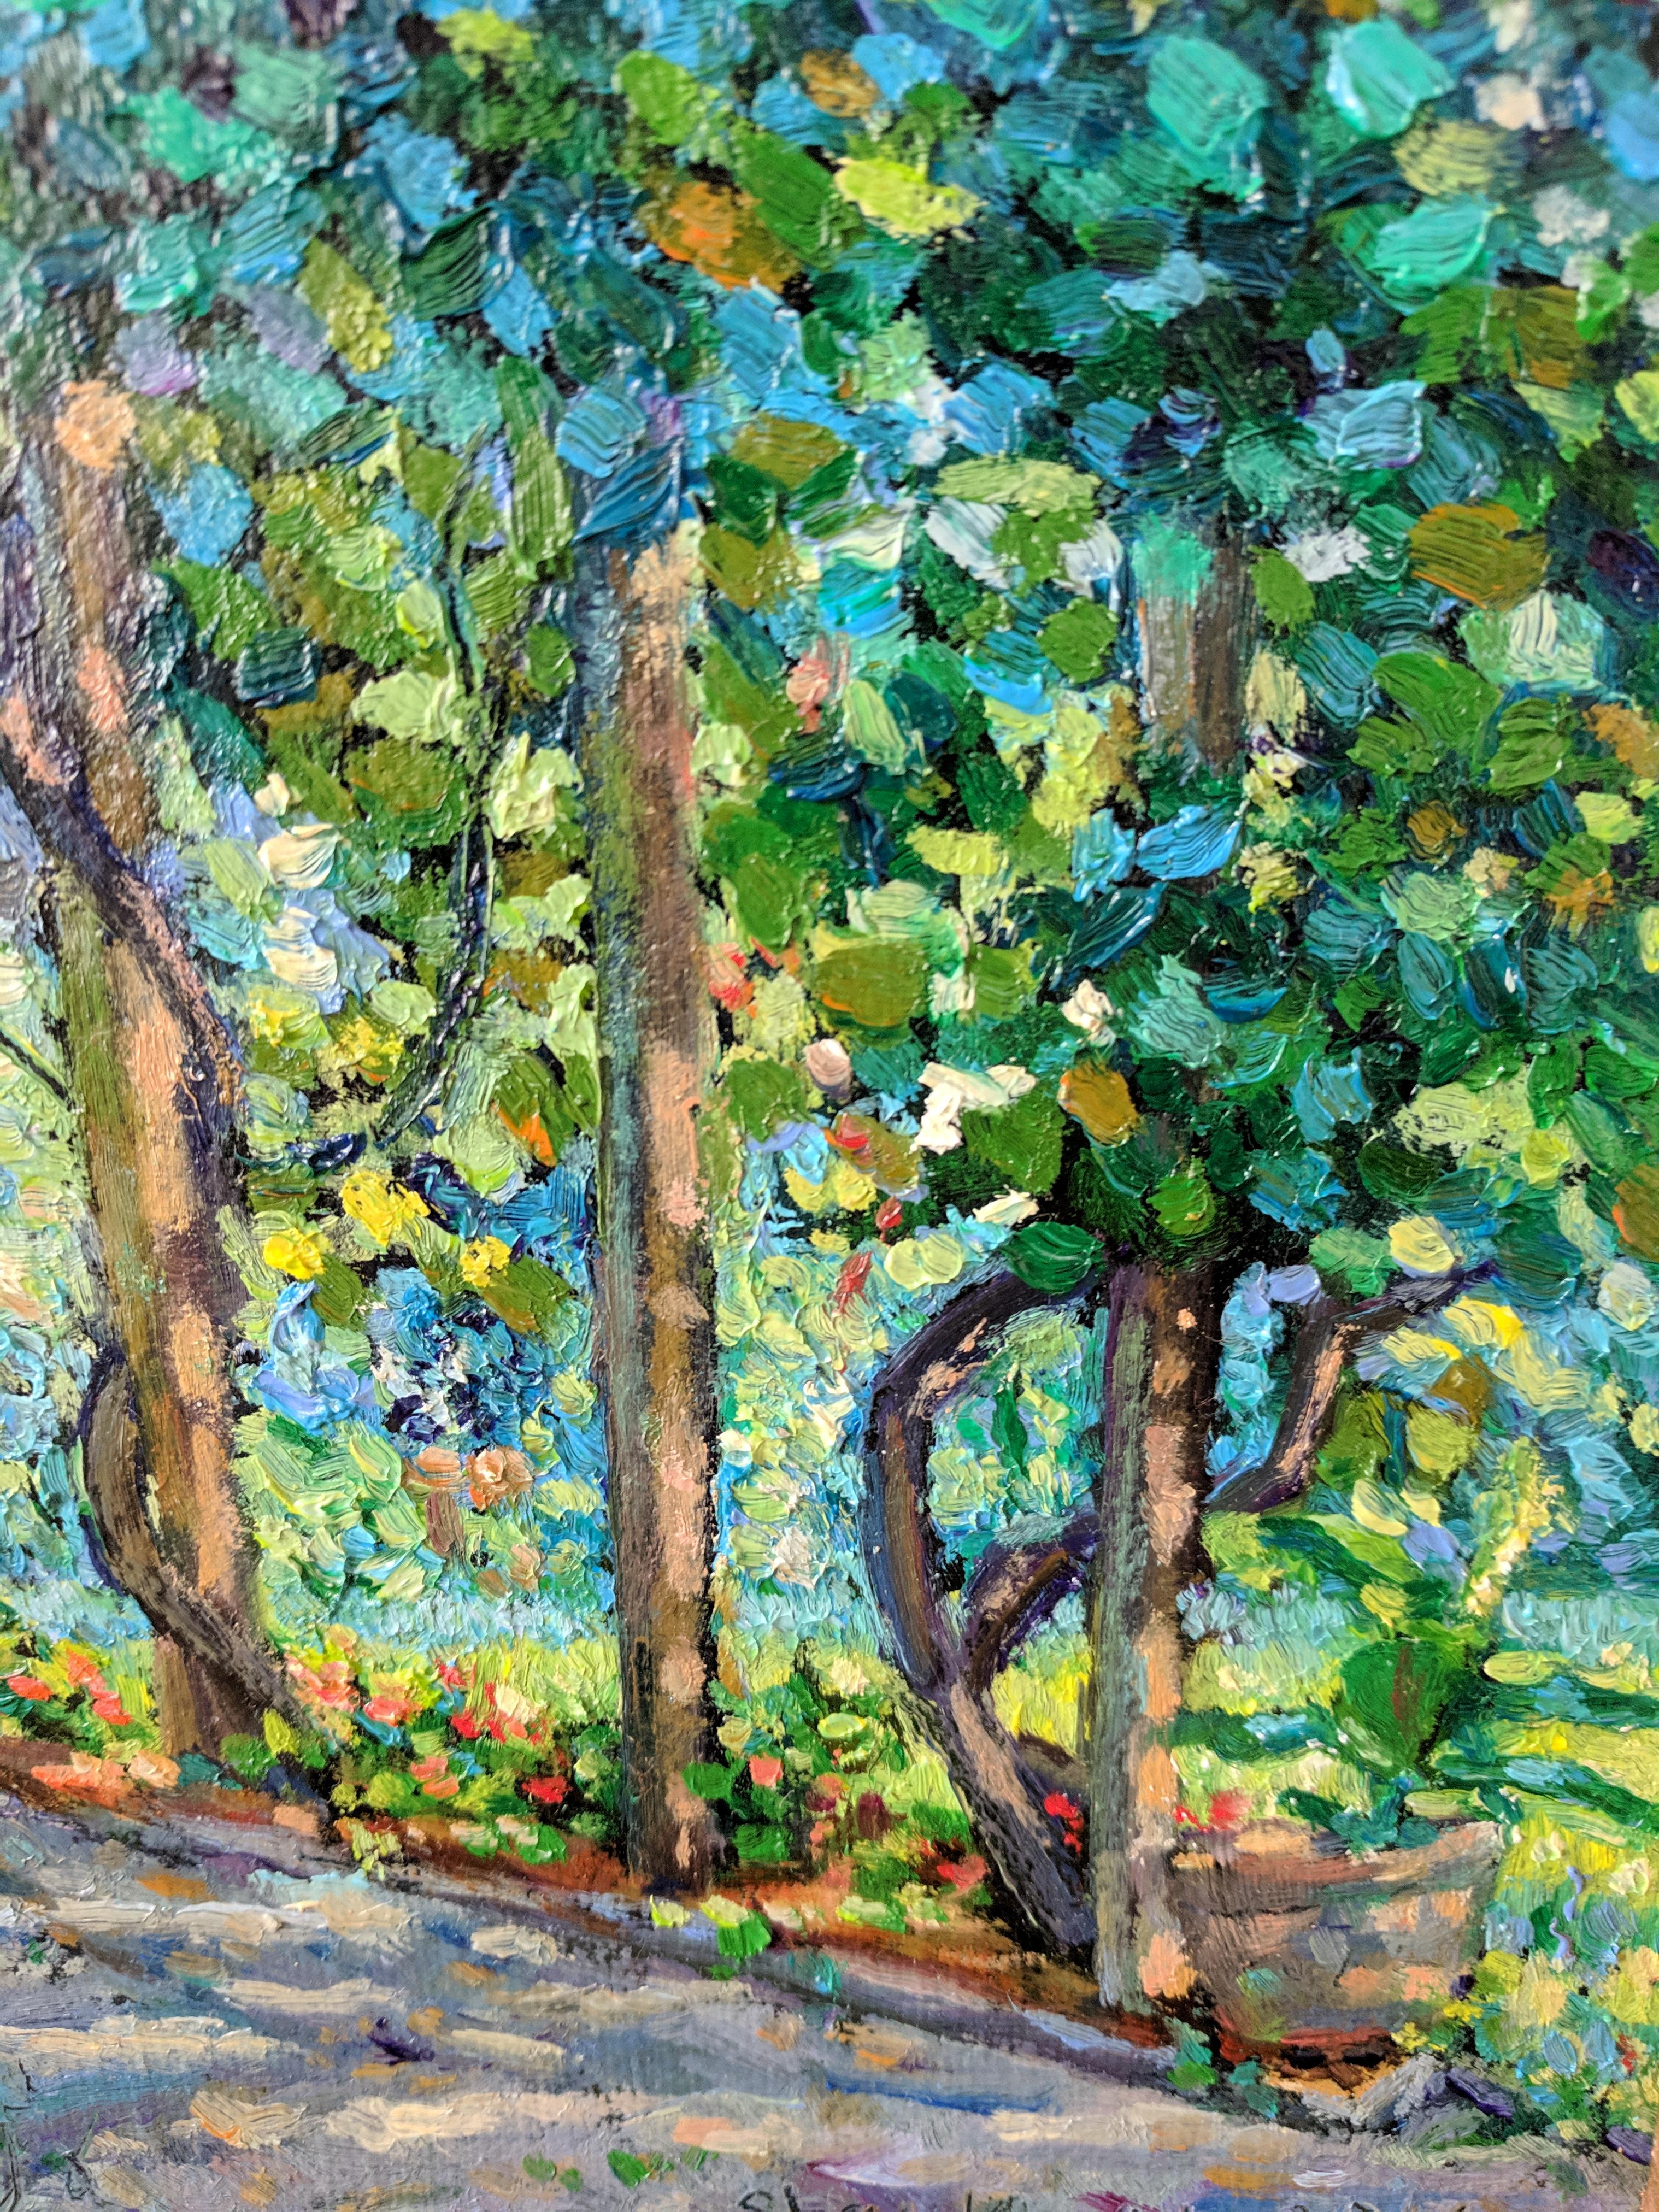 Cette peinture à l'huile sur lin est un bel exemple de paysage impressionniste américain réalisé par un peintre magistral. Le tableau présente une scène d'arbres verts et multicolores qui embrassent un chemin de pierre. La lumière qui filtre à